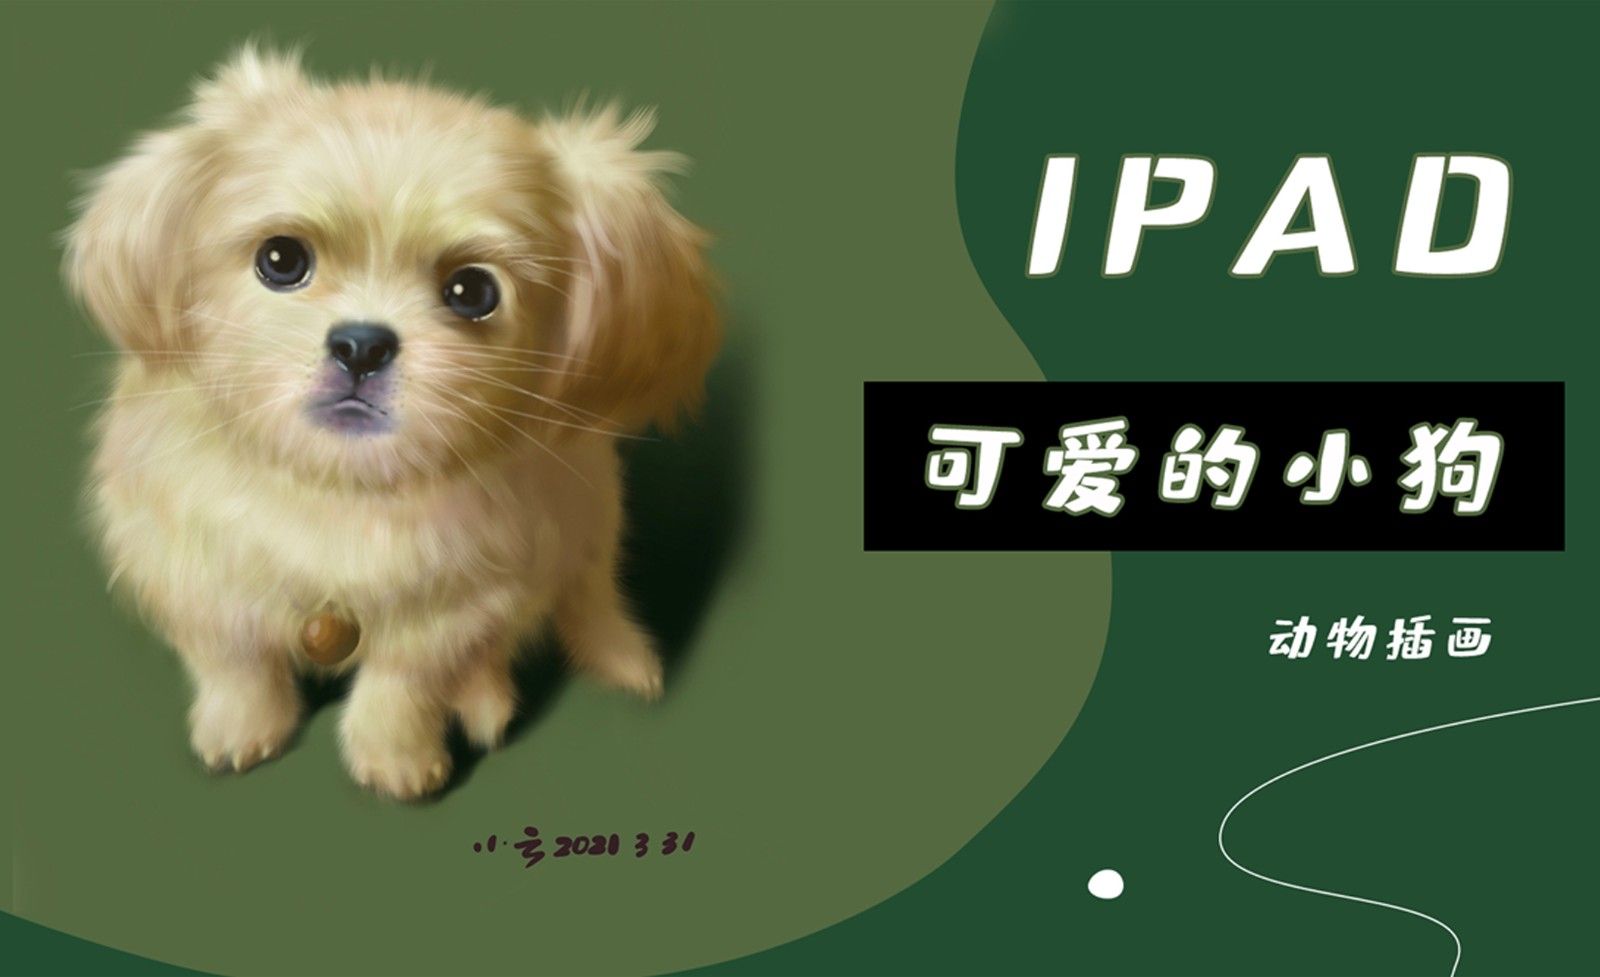 Procreate-用iPad画动物-可爱的小狗